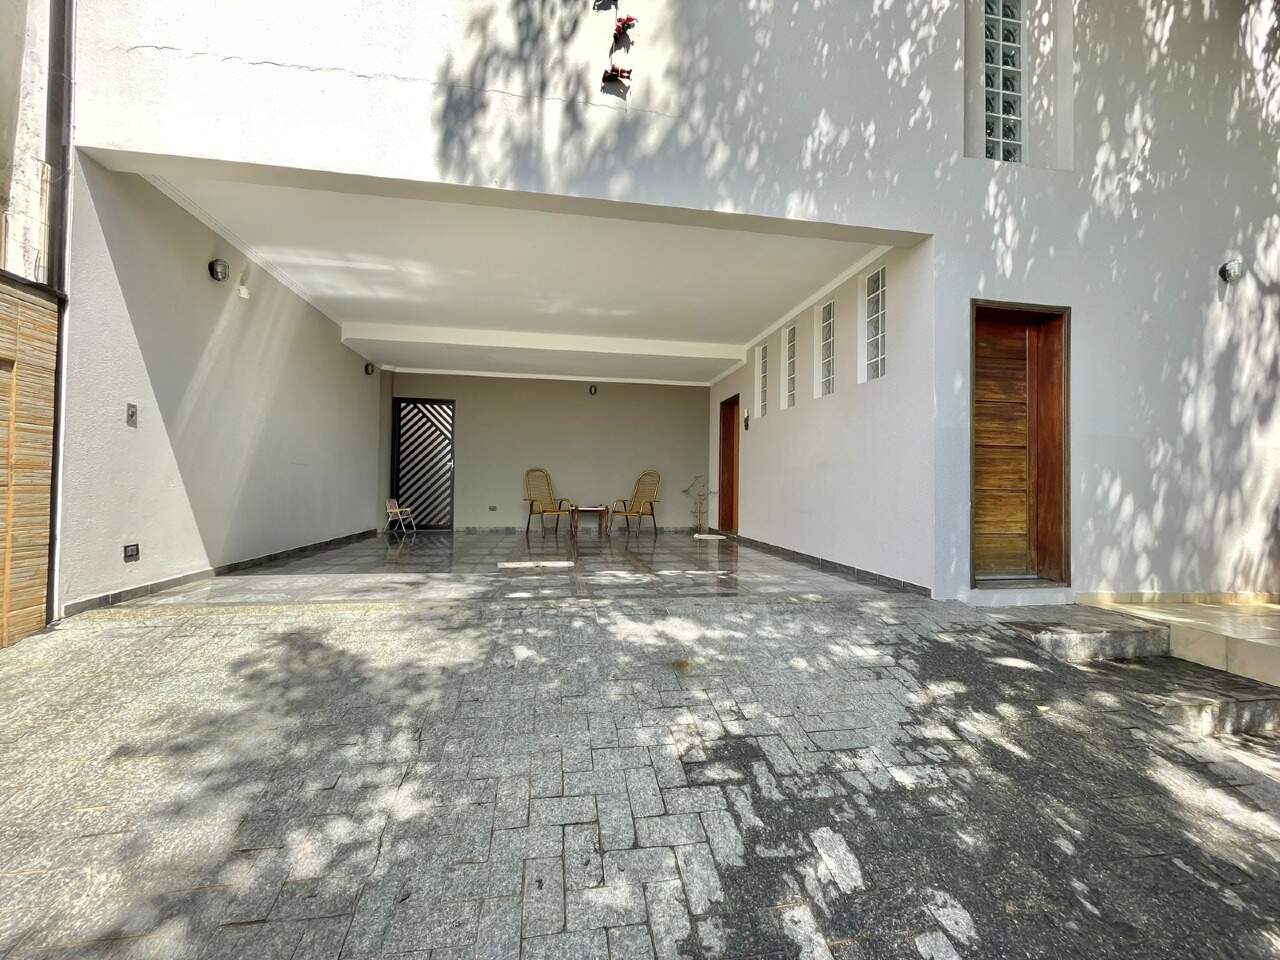 Casa à venda, 3 quartos, sendo 1 suíte, 4 vagas, no bairro Jardim Noiva da Colina em Piracicaba - SP